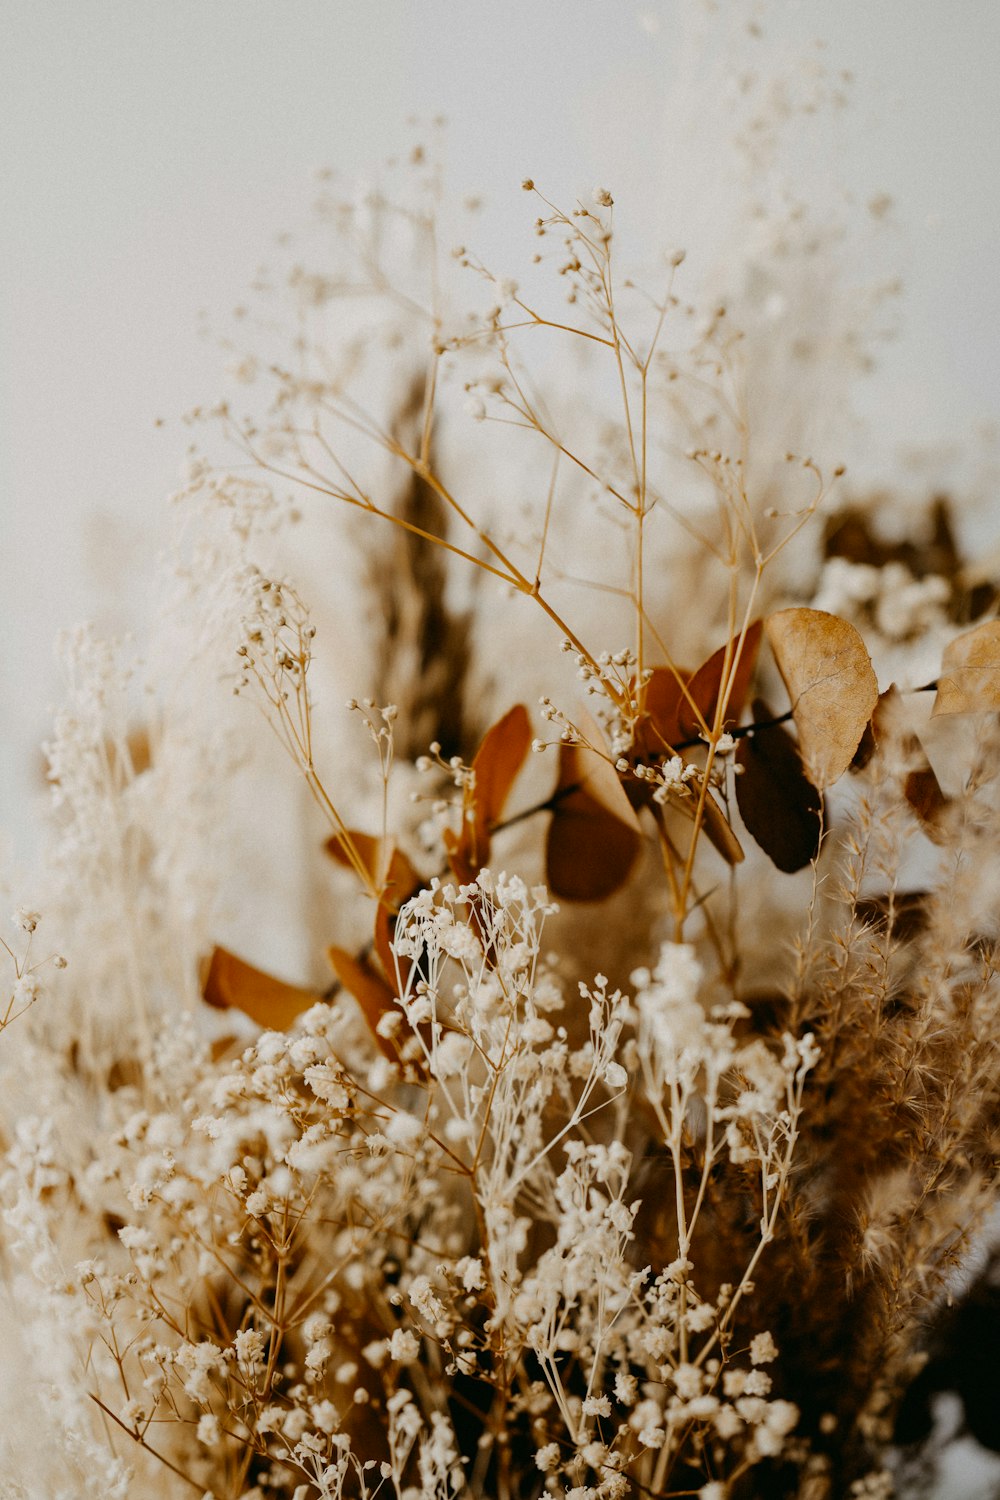 fiore marrone e bianco nella fotografia ravvicinata